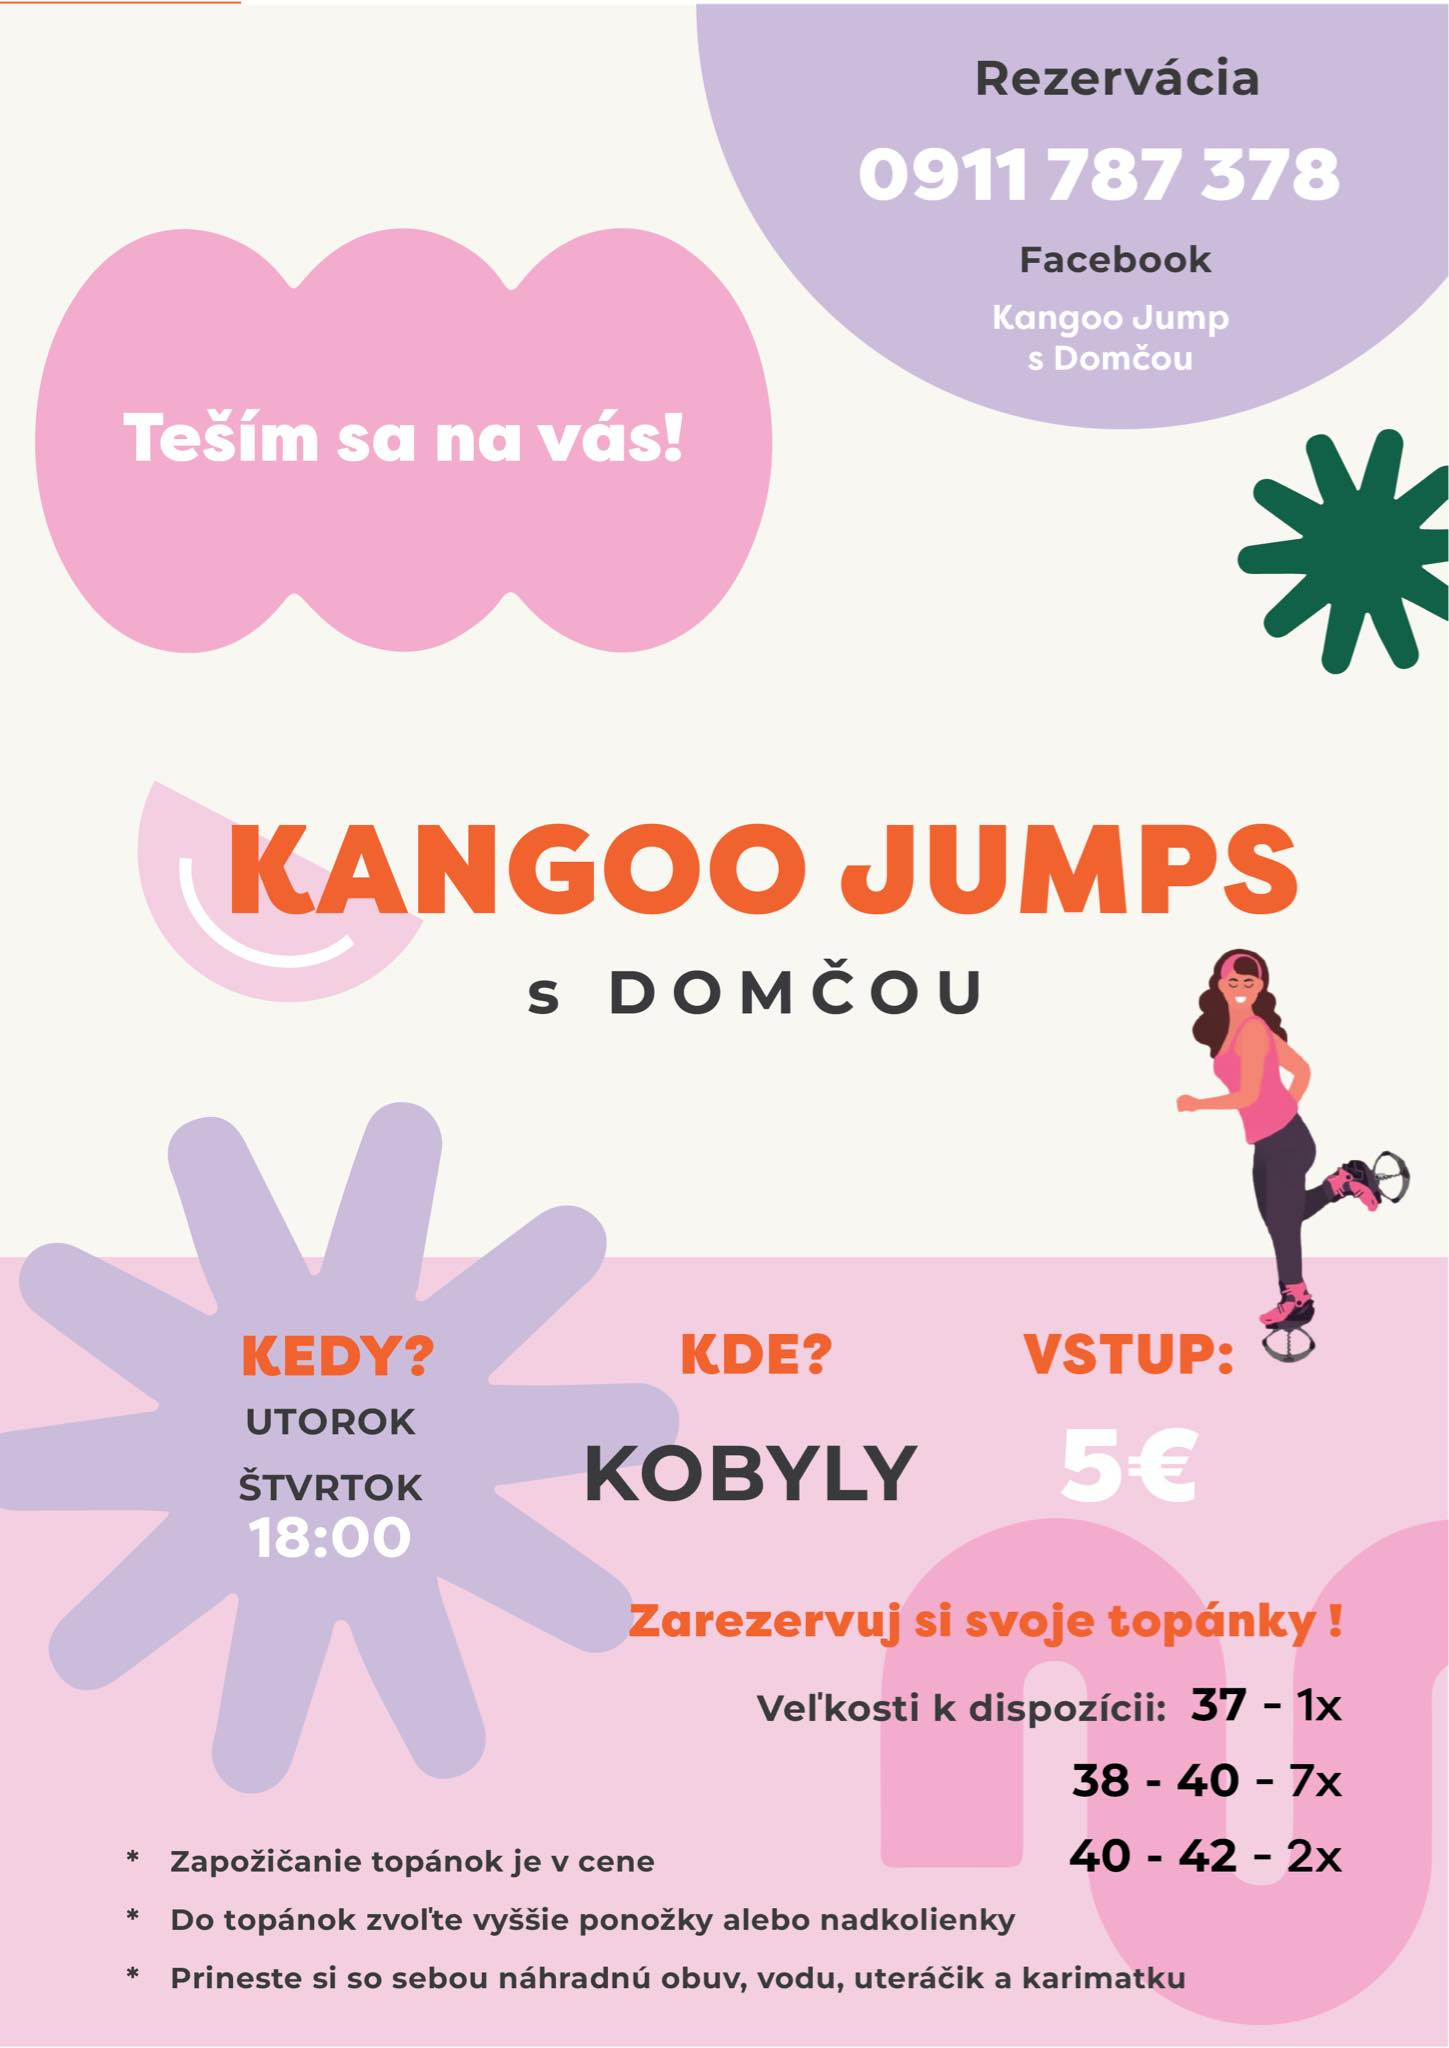 Pozvánka na cvičenie Kangoo Jump s Domčou